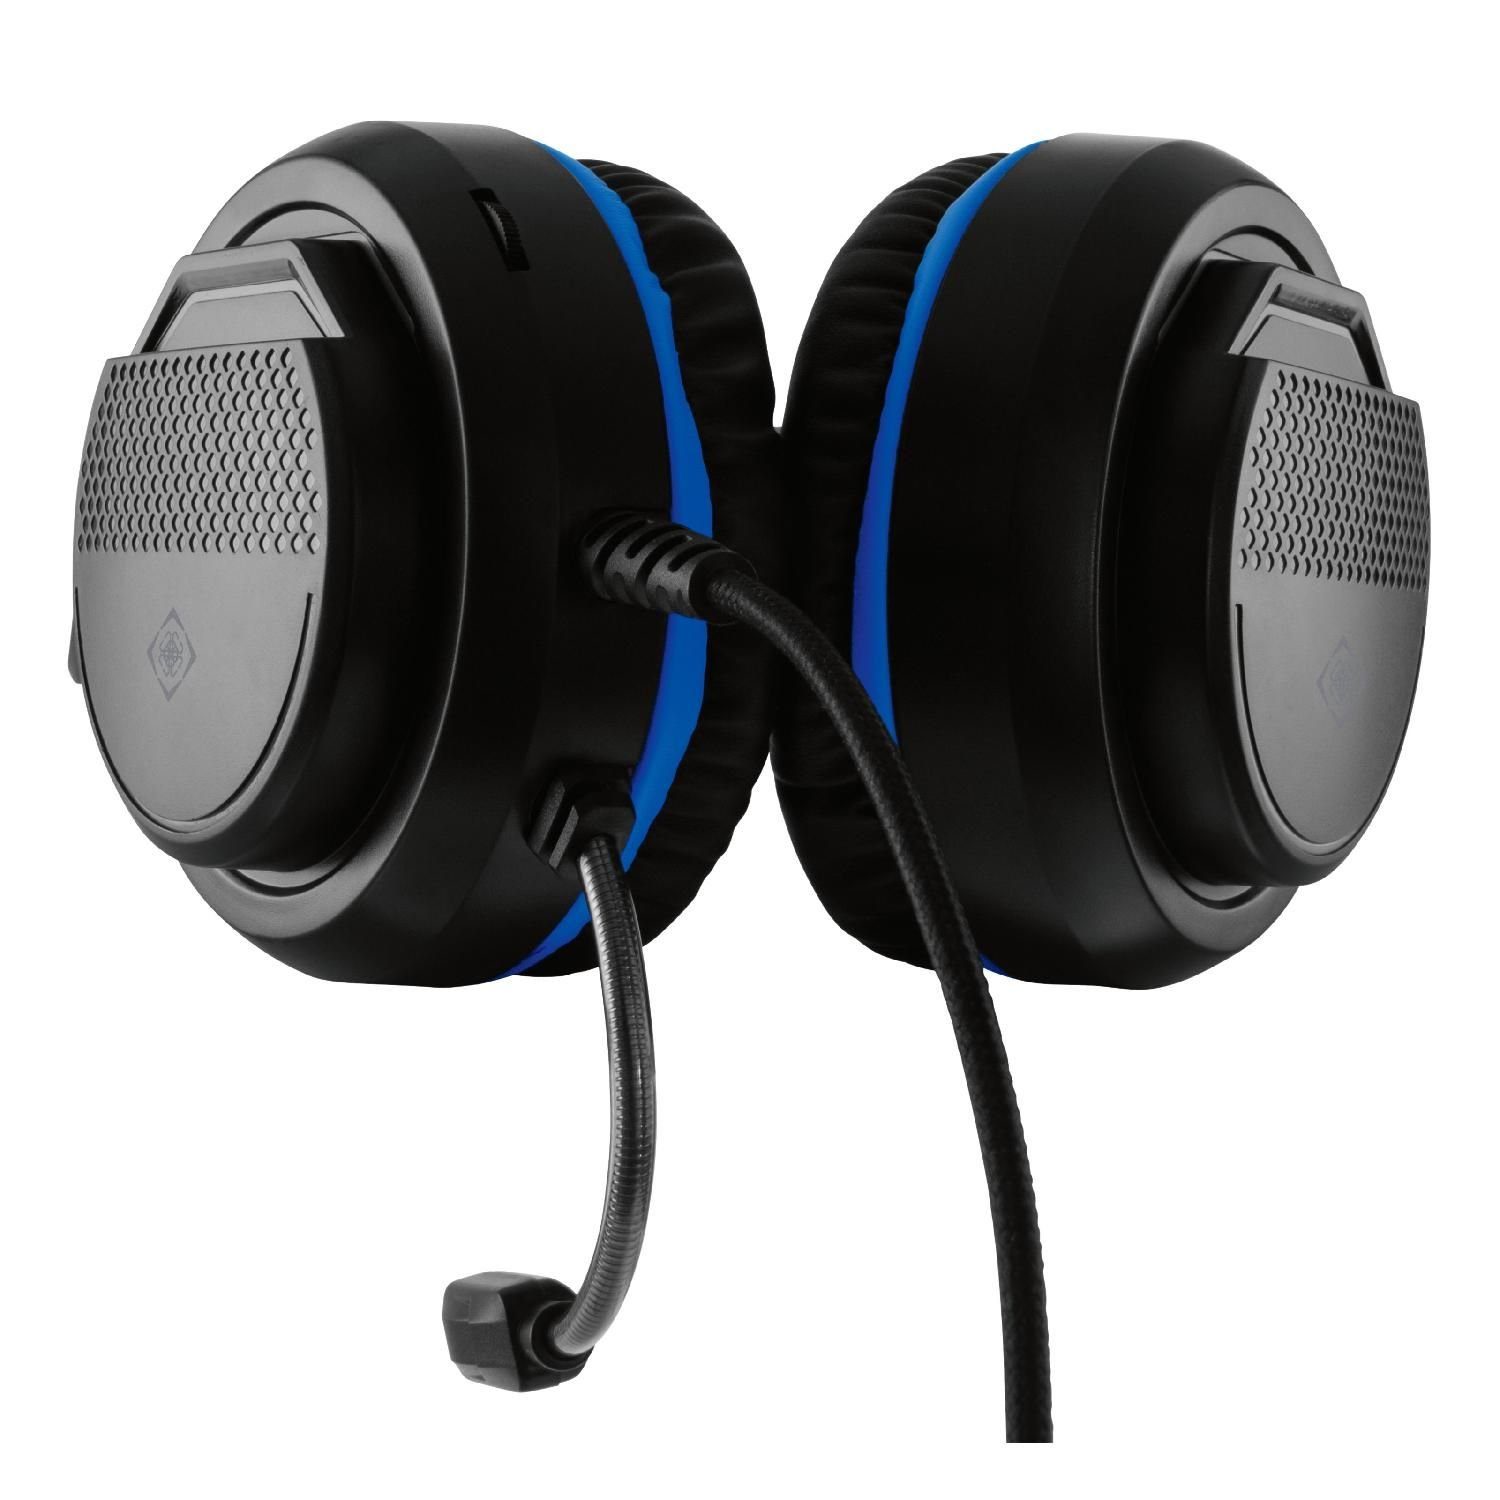 Kopfhörer Stereo Herstellergarantie) Headset Mikrofon, Gaming DELTACO (außenstehendes für Headset 5 PS5 inkl. Jahre schwarz